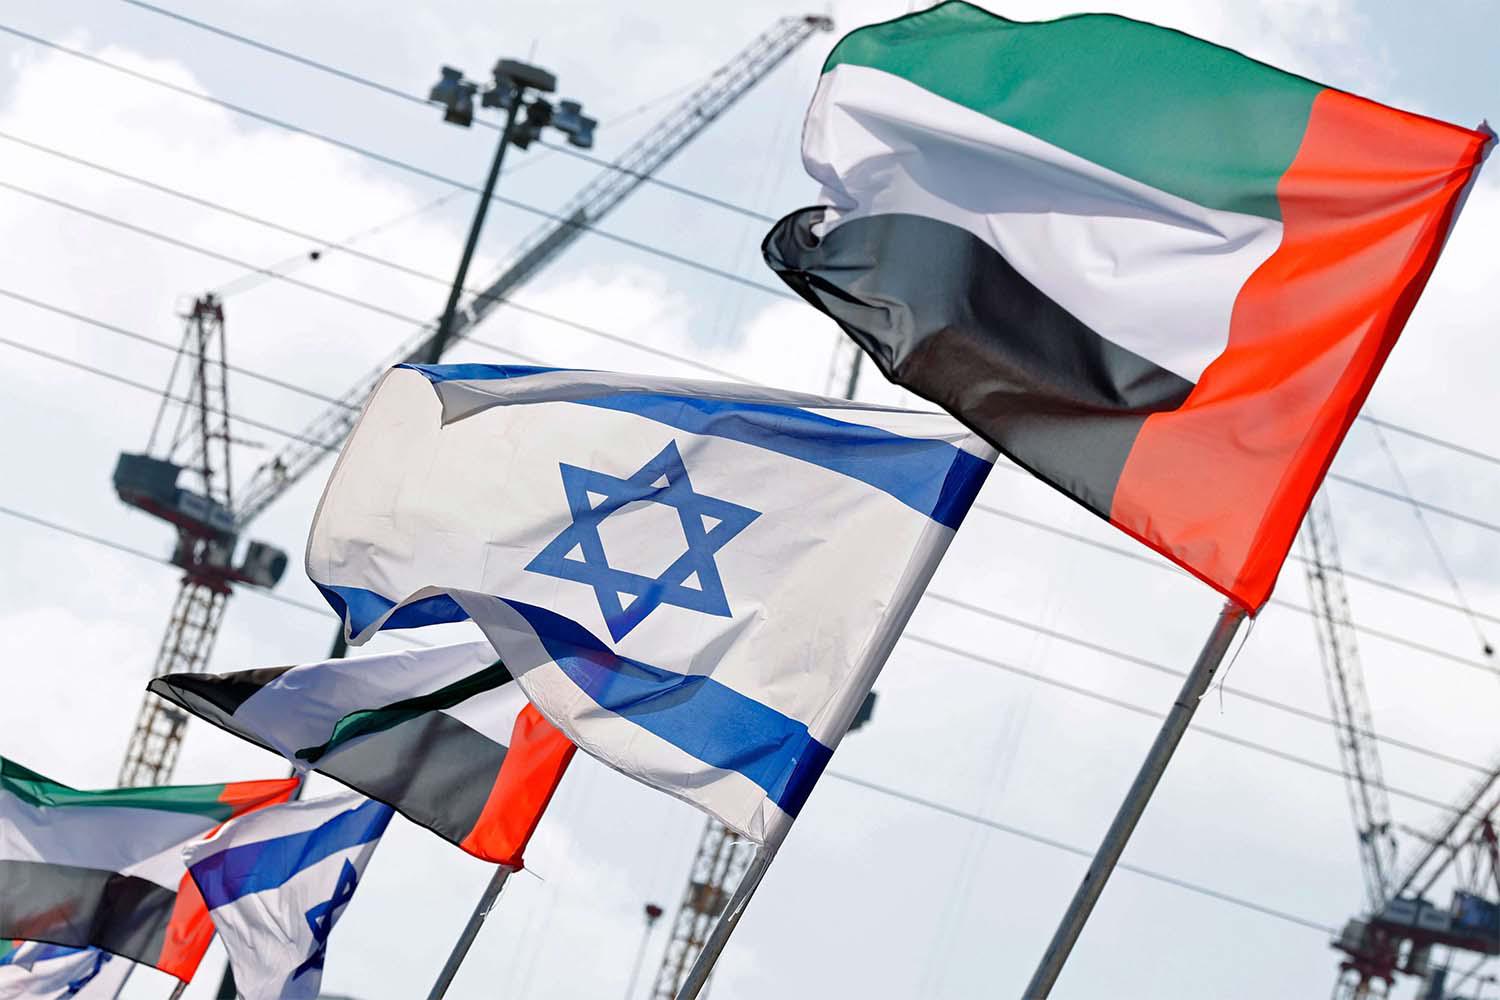 Israeli and UAE flags line a road in the Israeli coastal city of Netanya